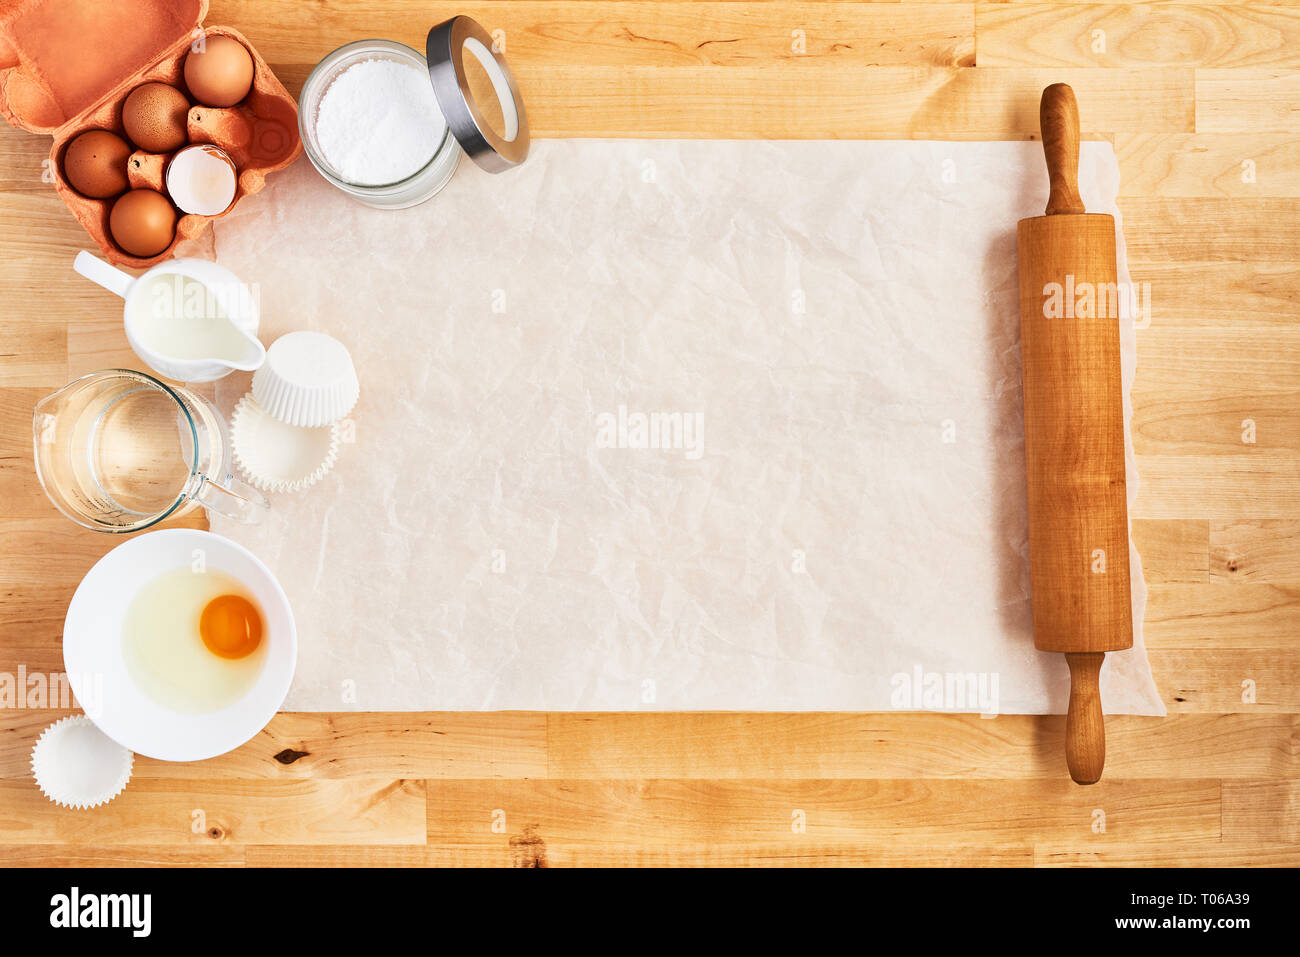 Cây cán bột là một trong những dụng cụ quan trọng nhất trong nhà bếp. Kết hợp với các dụng cụ khác, bạn sẽ có thể tạo ra những món bánh tuyệt vời. Hãy xem ảnh liên quan để khám phá thêm về những dụng cụ bếp hữu ích khác.